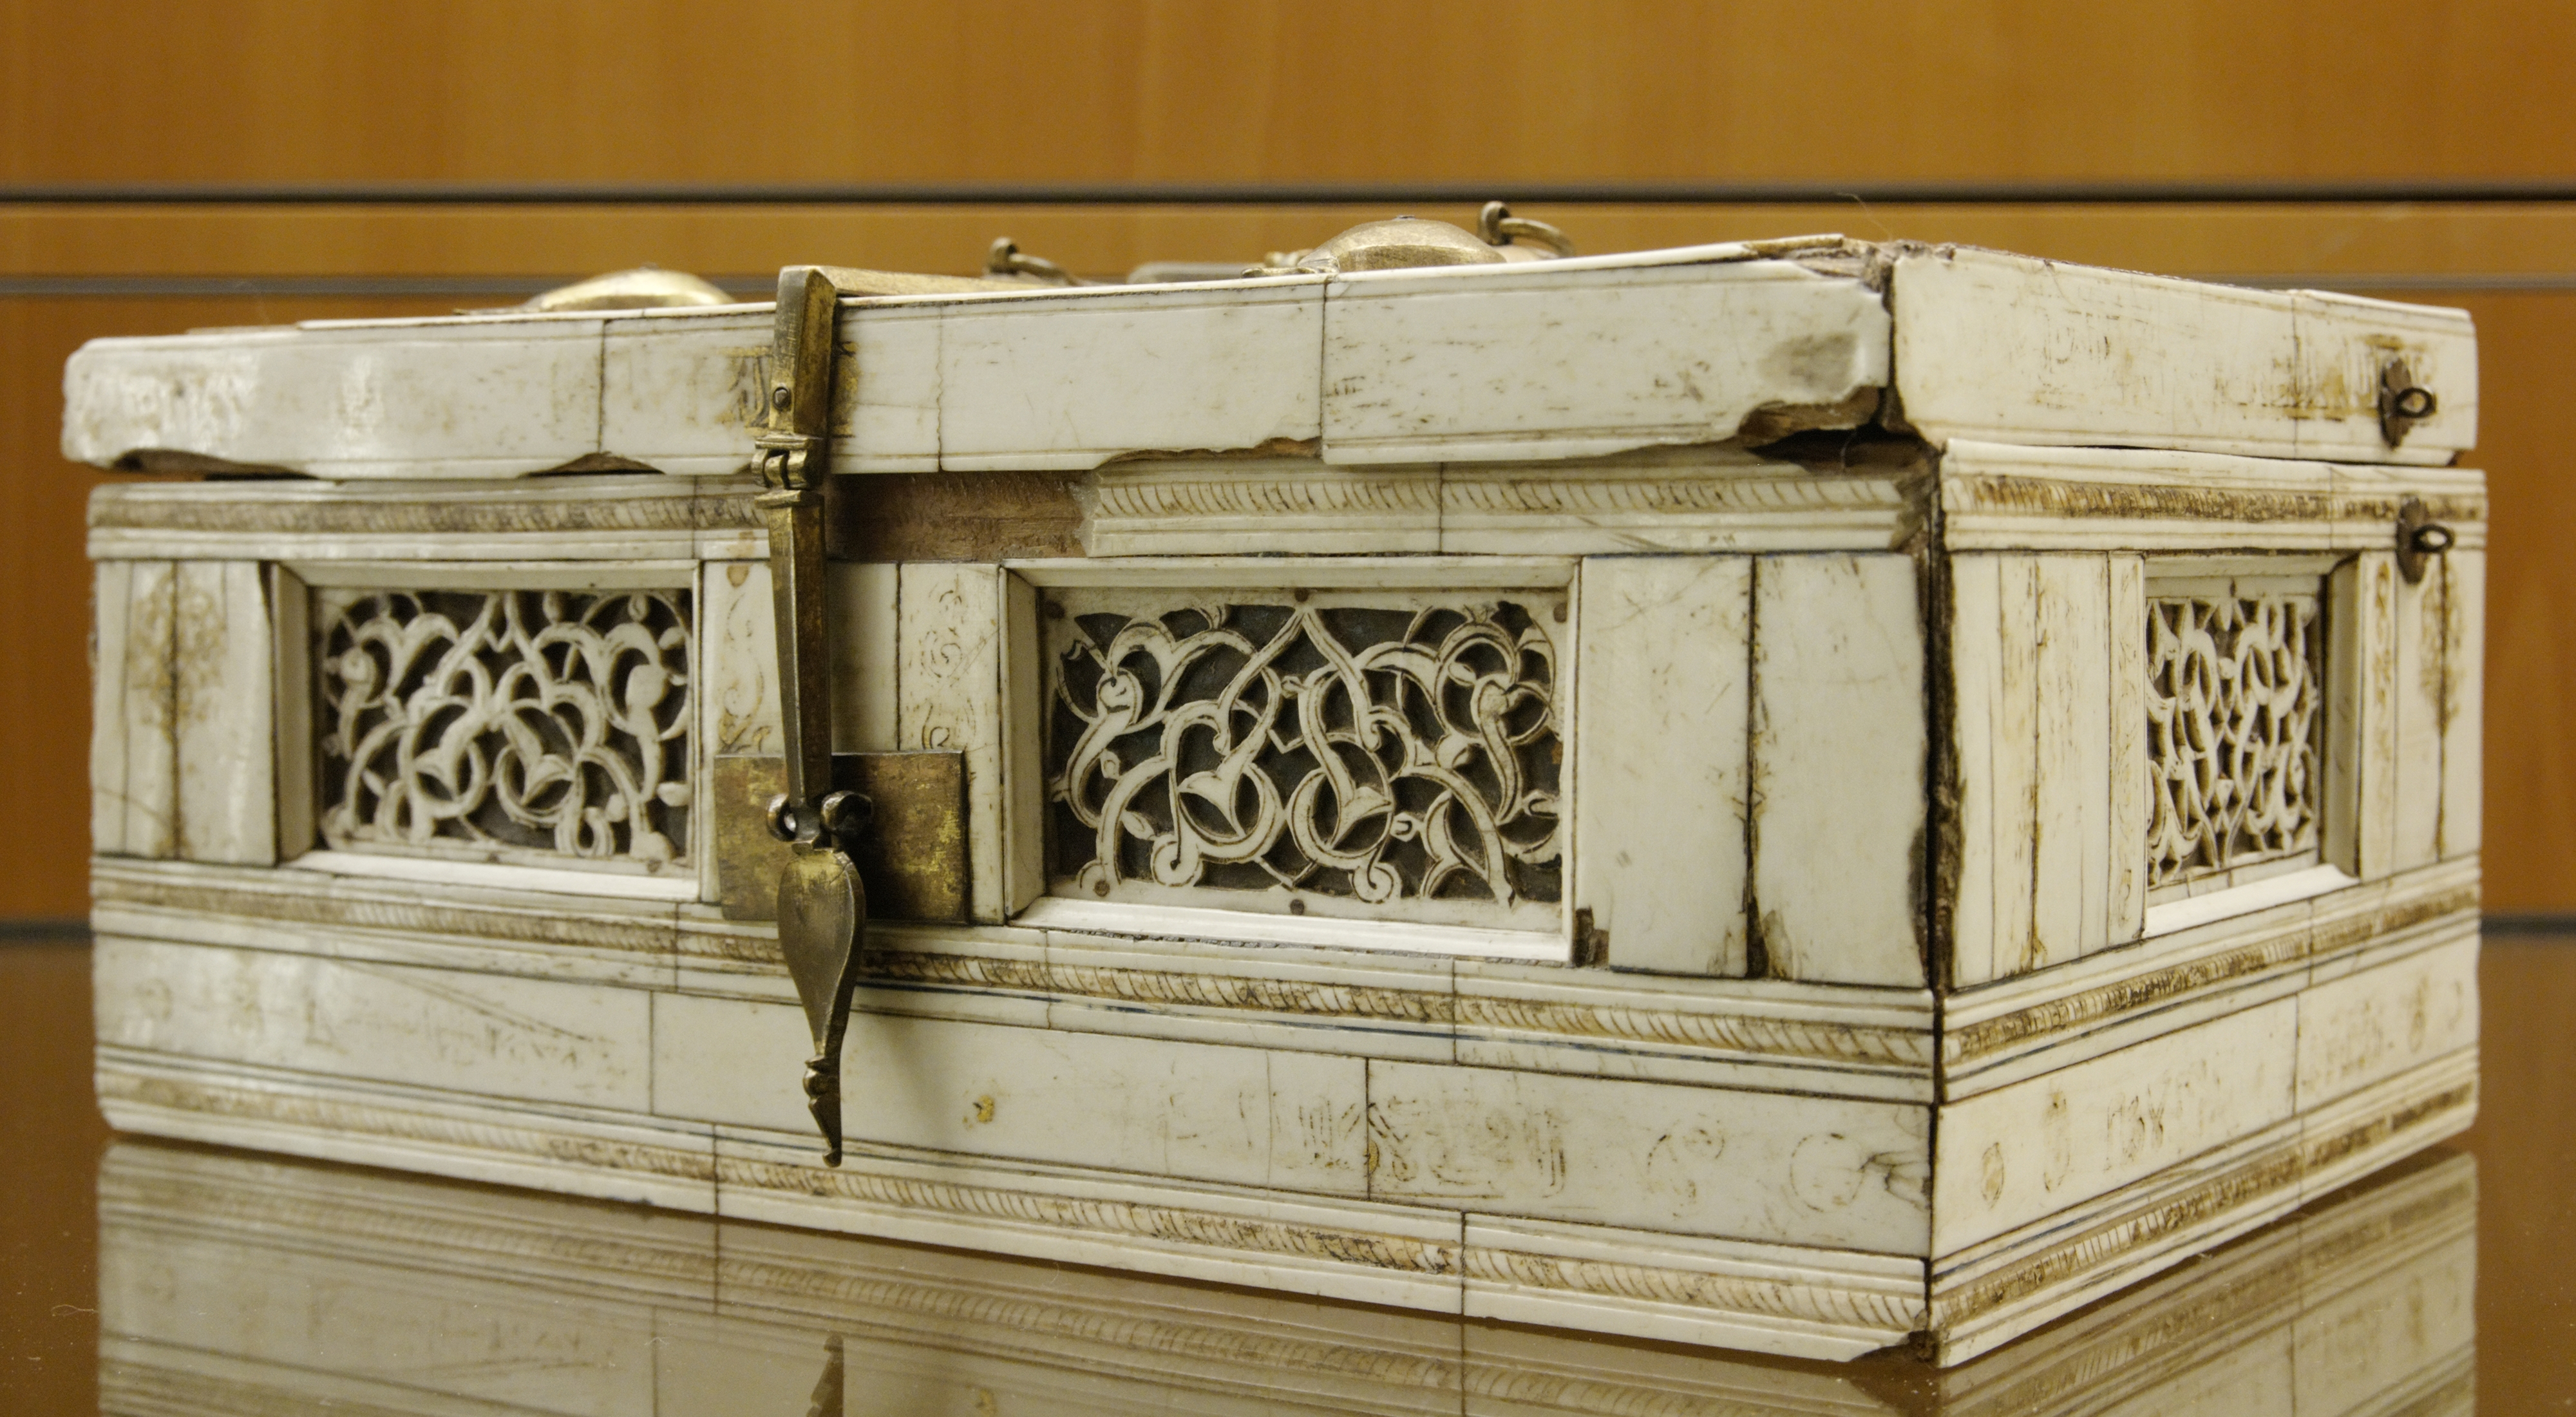 Ivory casket MBA Lyon D378